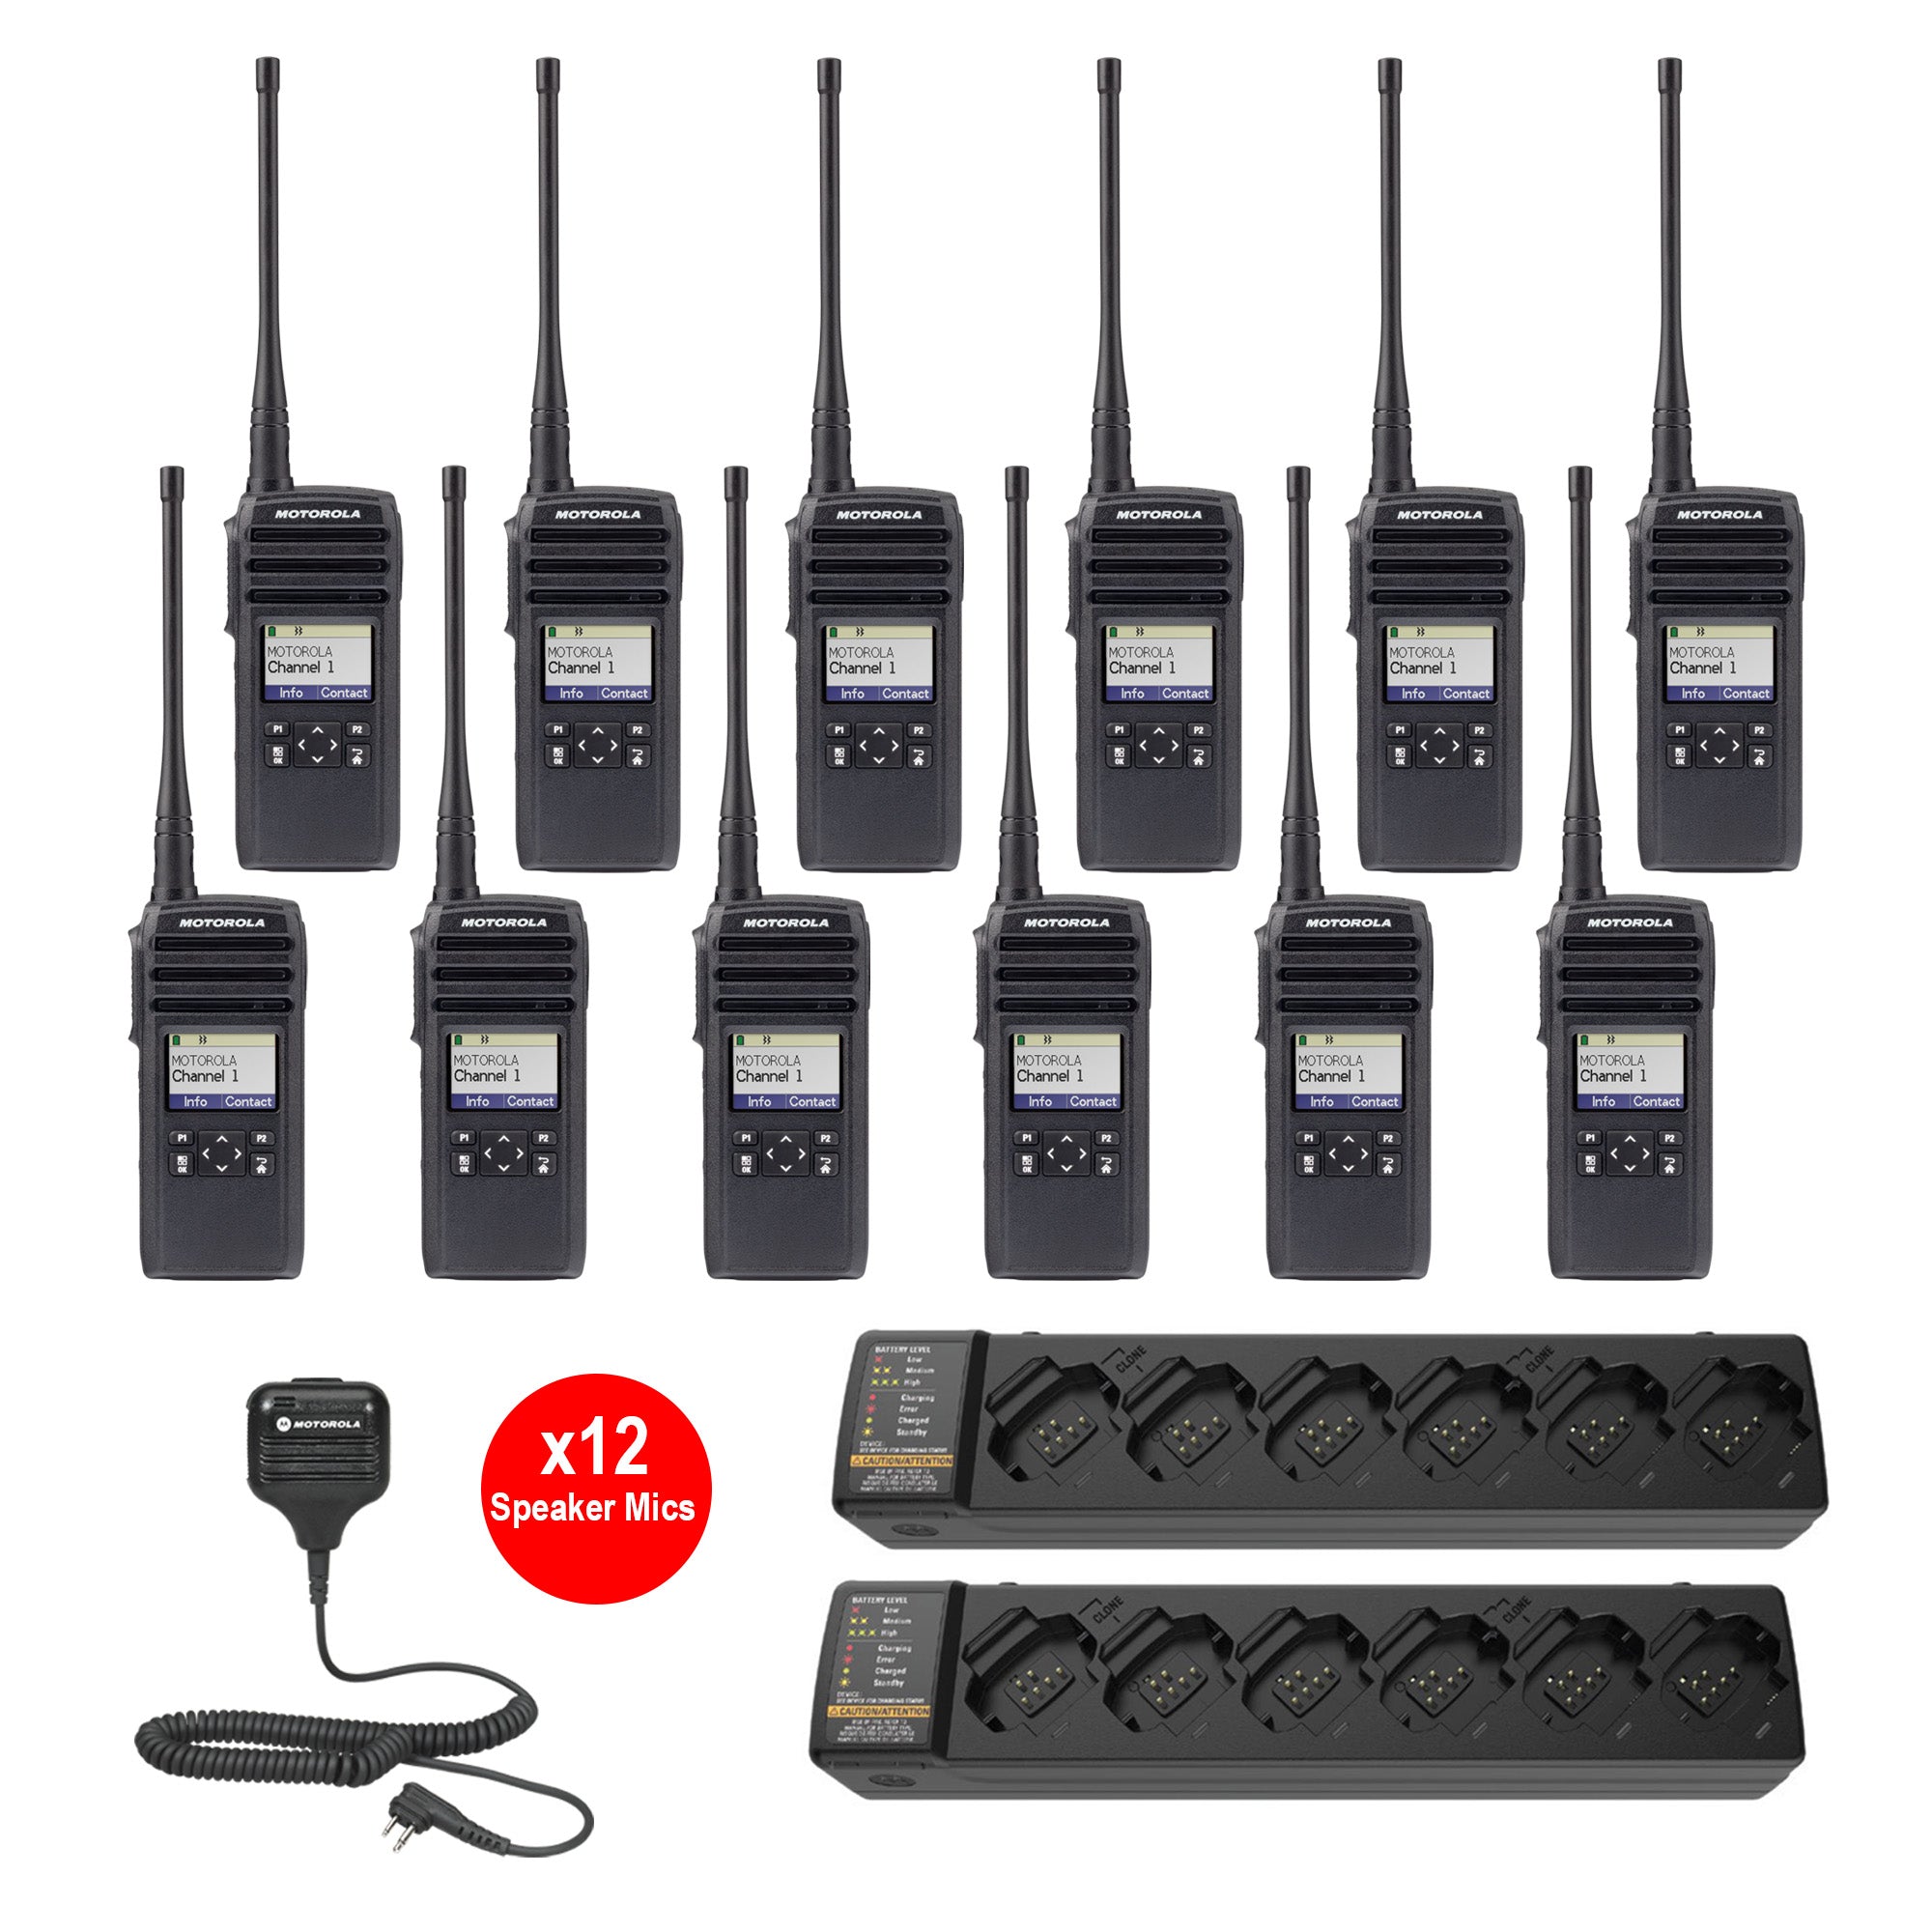 12 Pack of Motorola RMM2050 Two Way Radio Walkie Talkies - 5